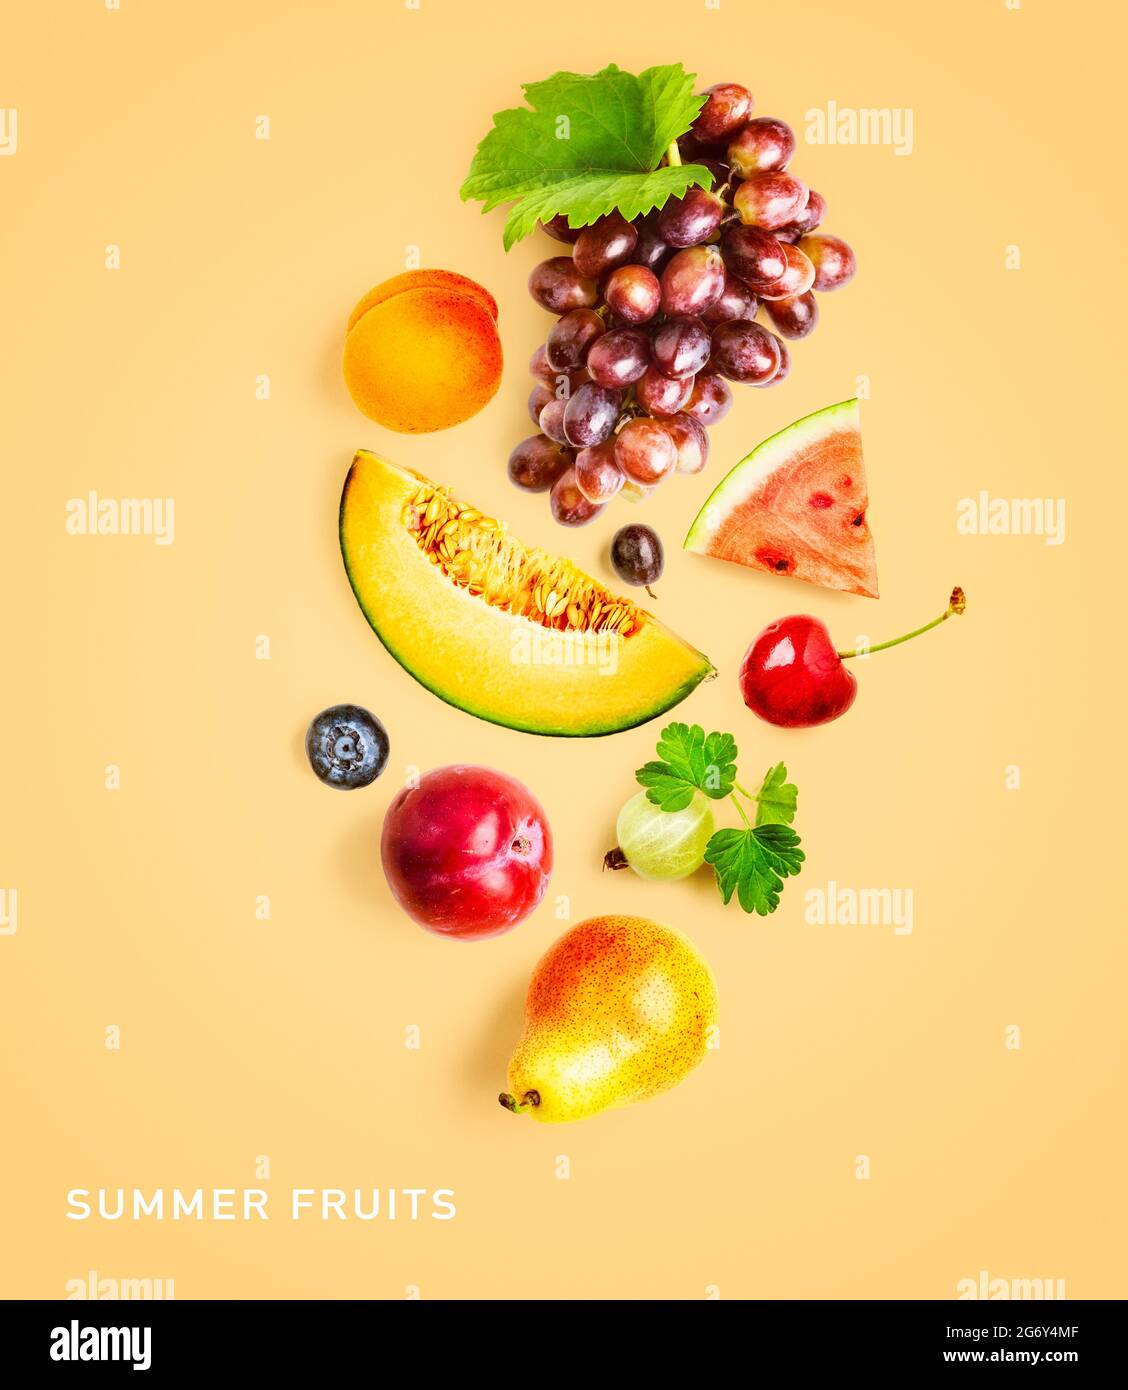 Aménagement créatif fruits d'été. Raisin, melon, pastèque, abricot, prune rouge, cerise, poire, myrtille et groseille sur fond jaune. Vue de dessus, Fla Banque D'Images